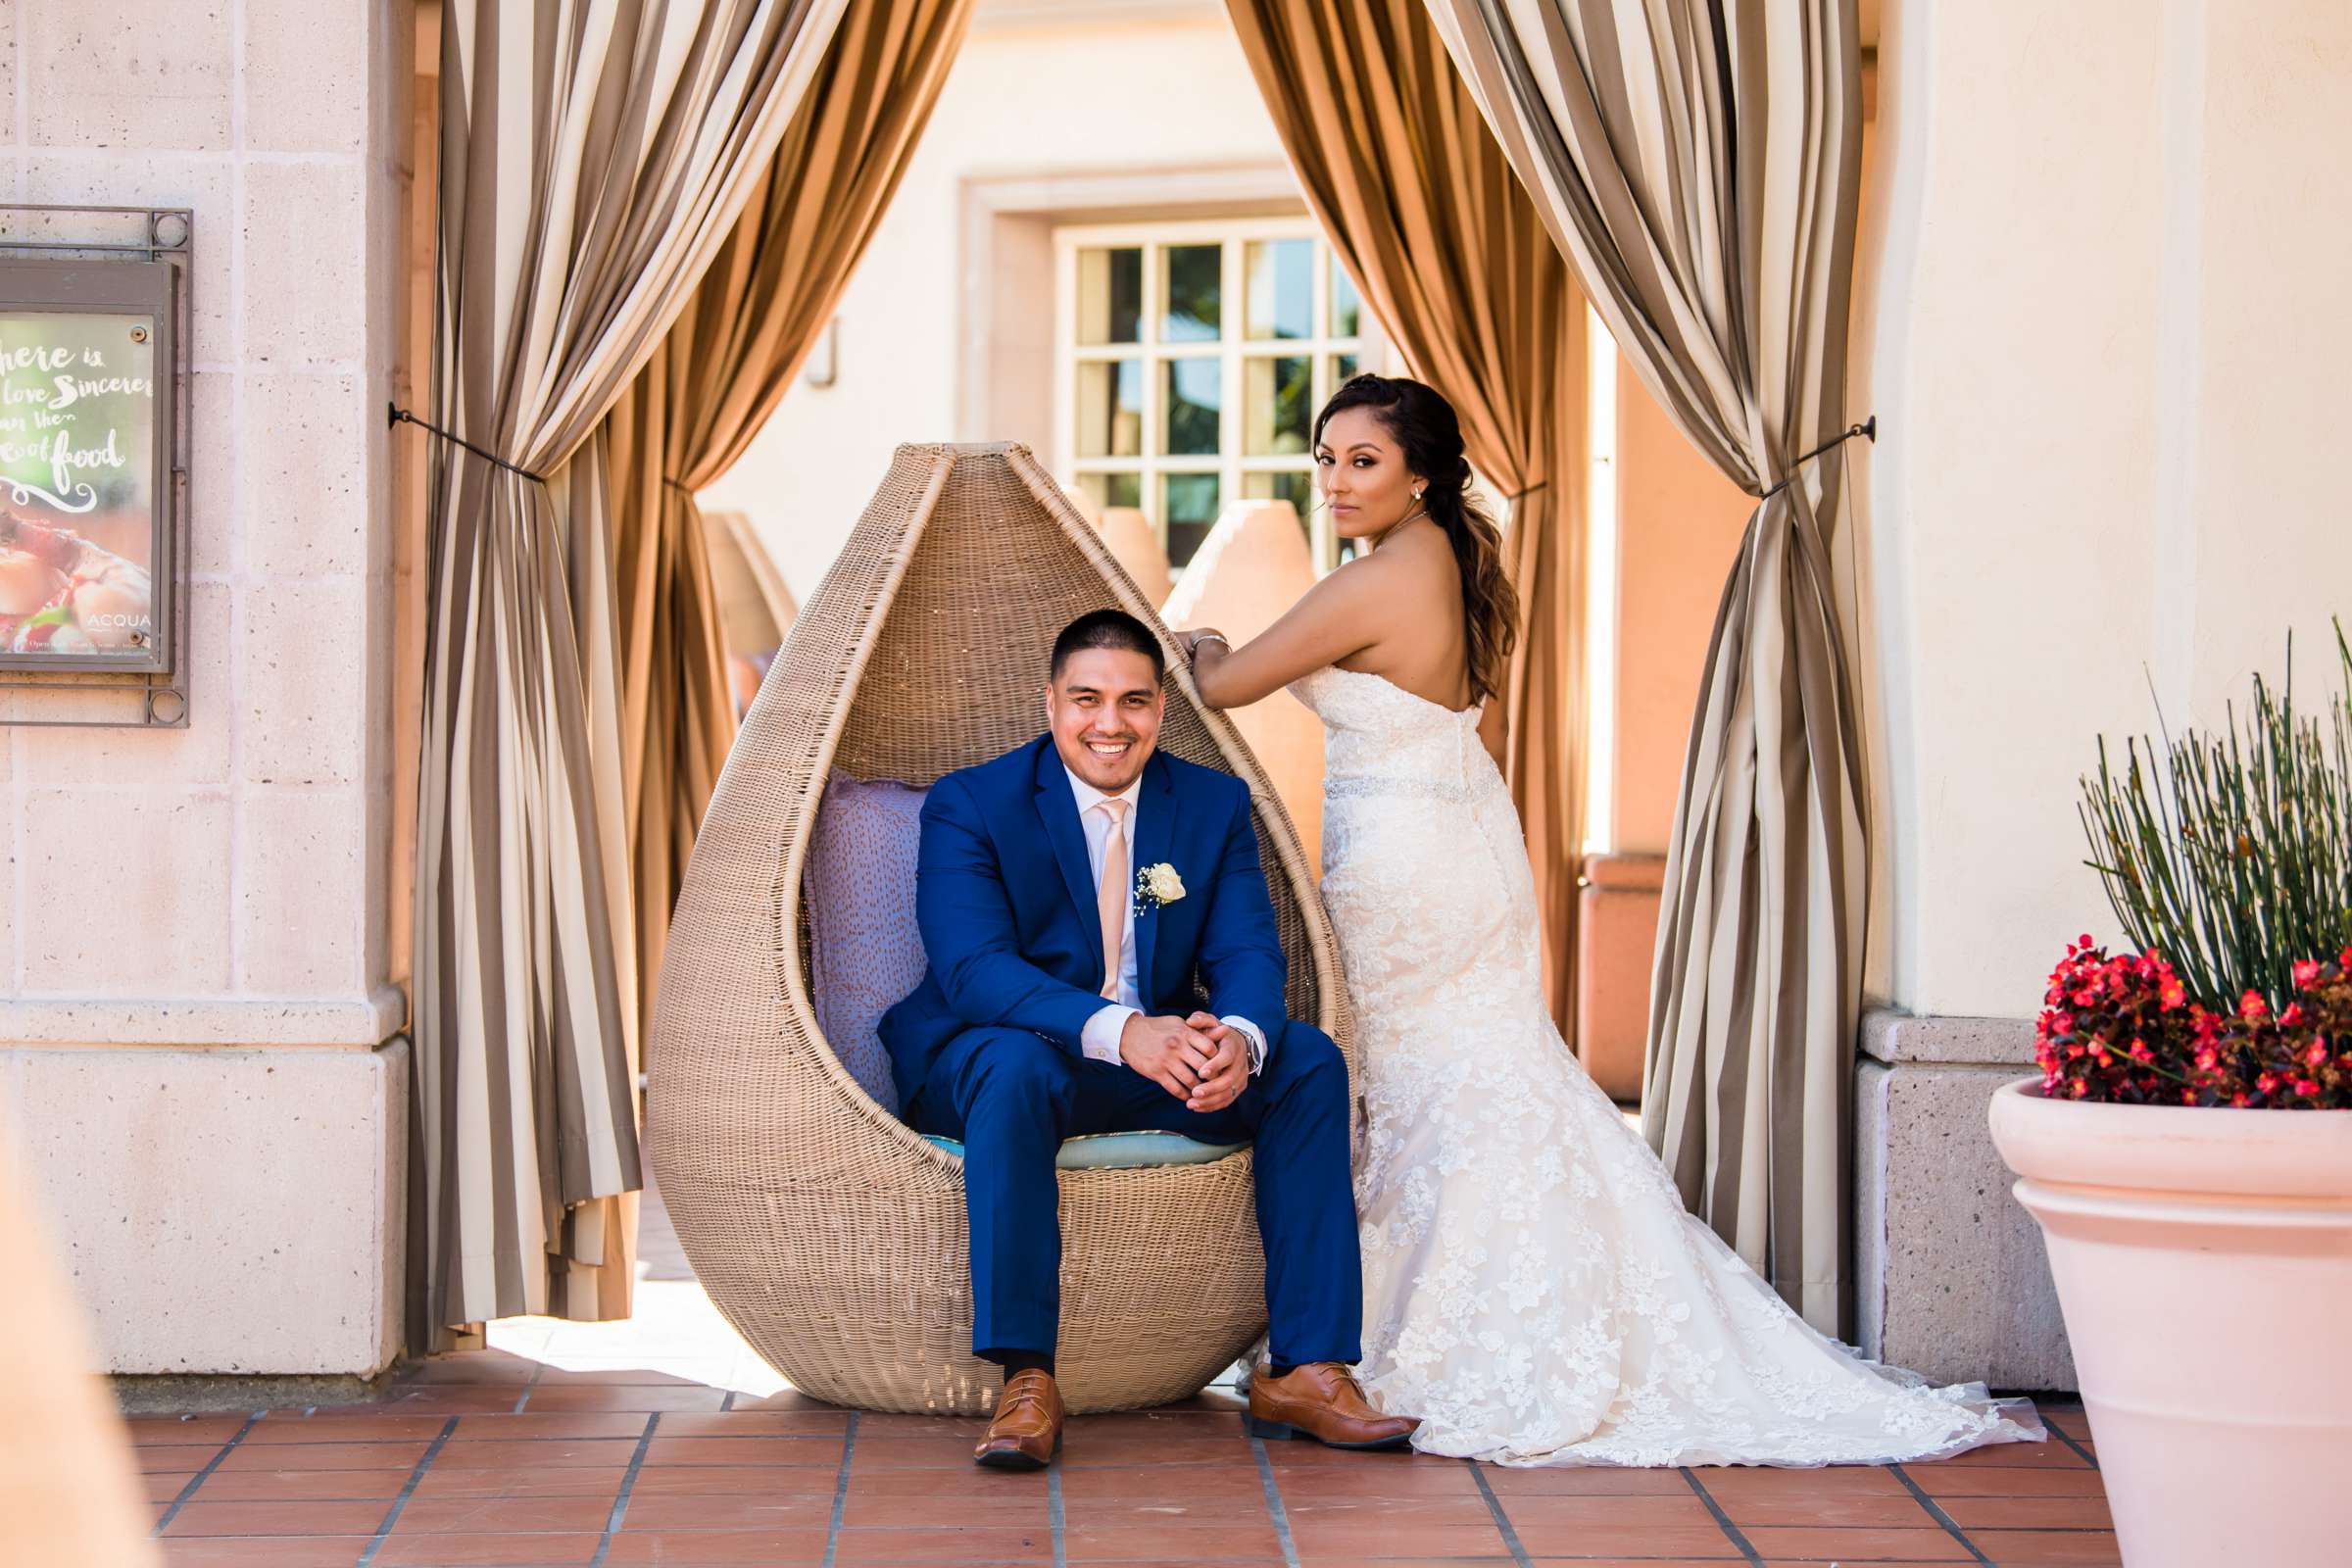 San Diego Mission Bay Resort Wedding, Annie and Edward Wedding Photo #2 by True Photography